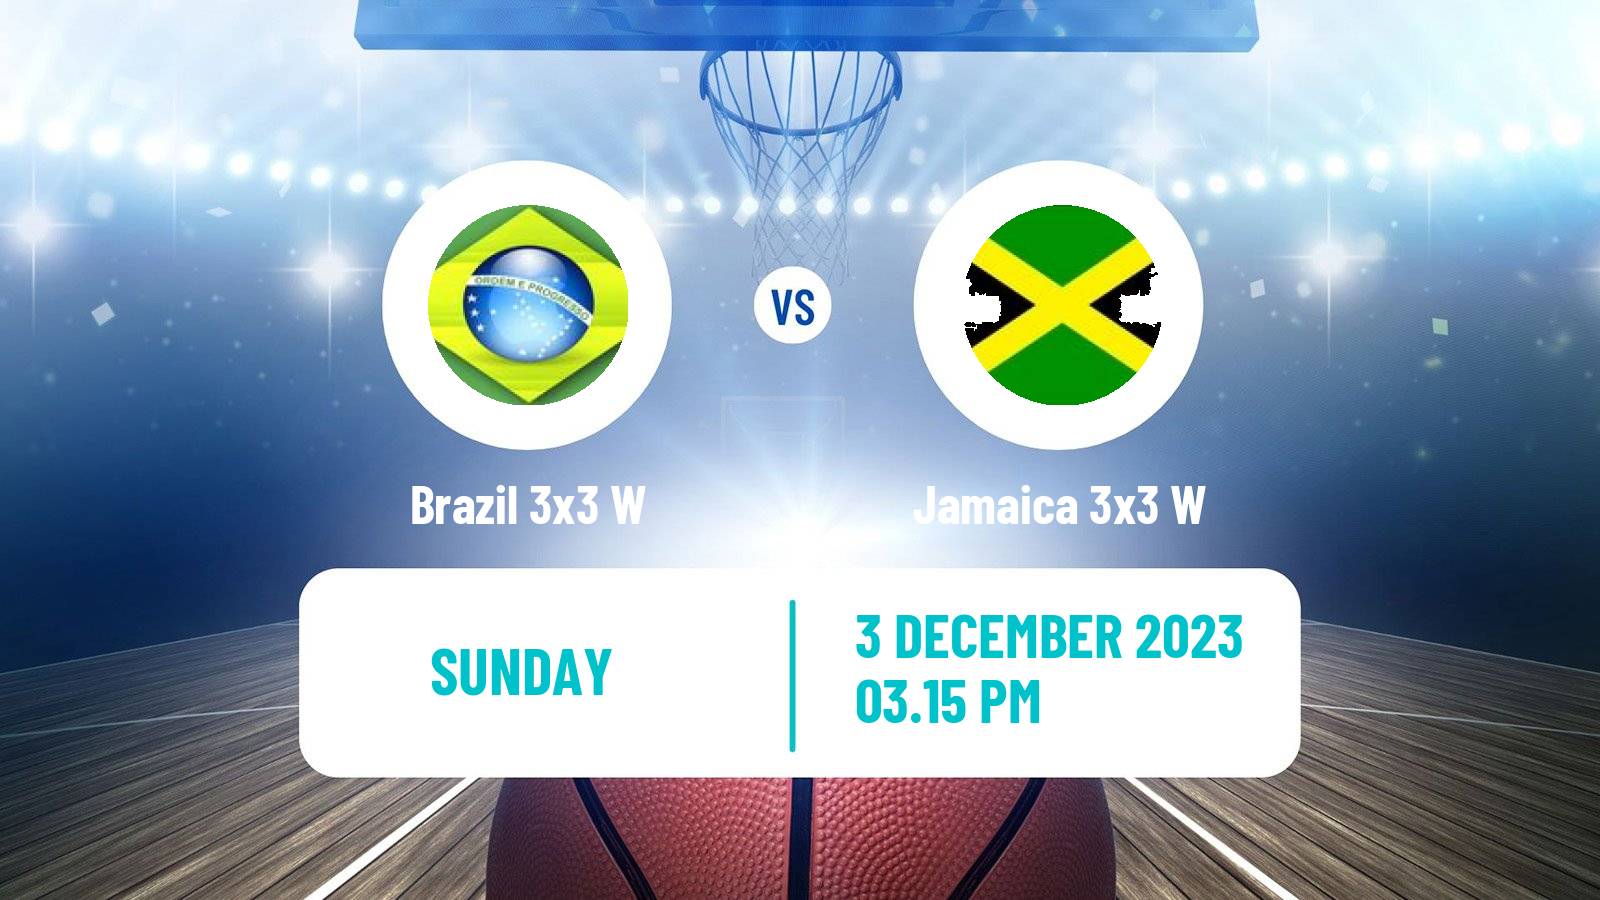 Basketball Americup 3x3 Women Brazil 3x3 W - Jamaica 3x3 W